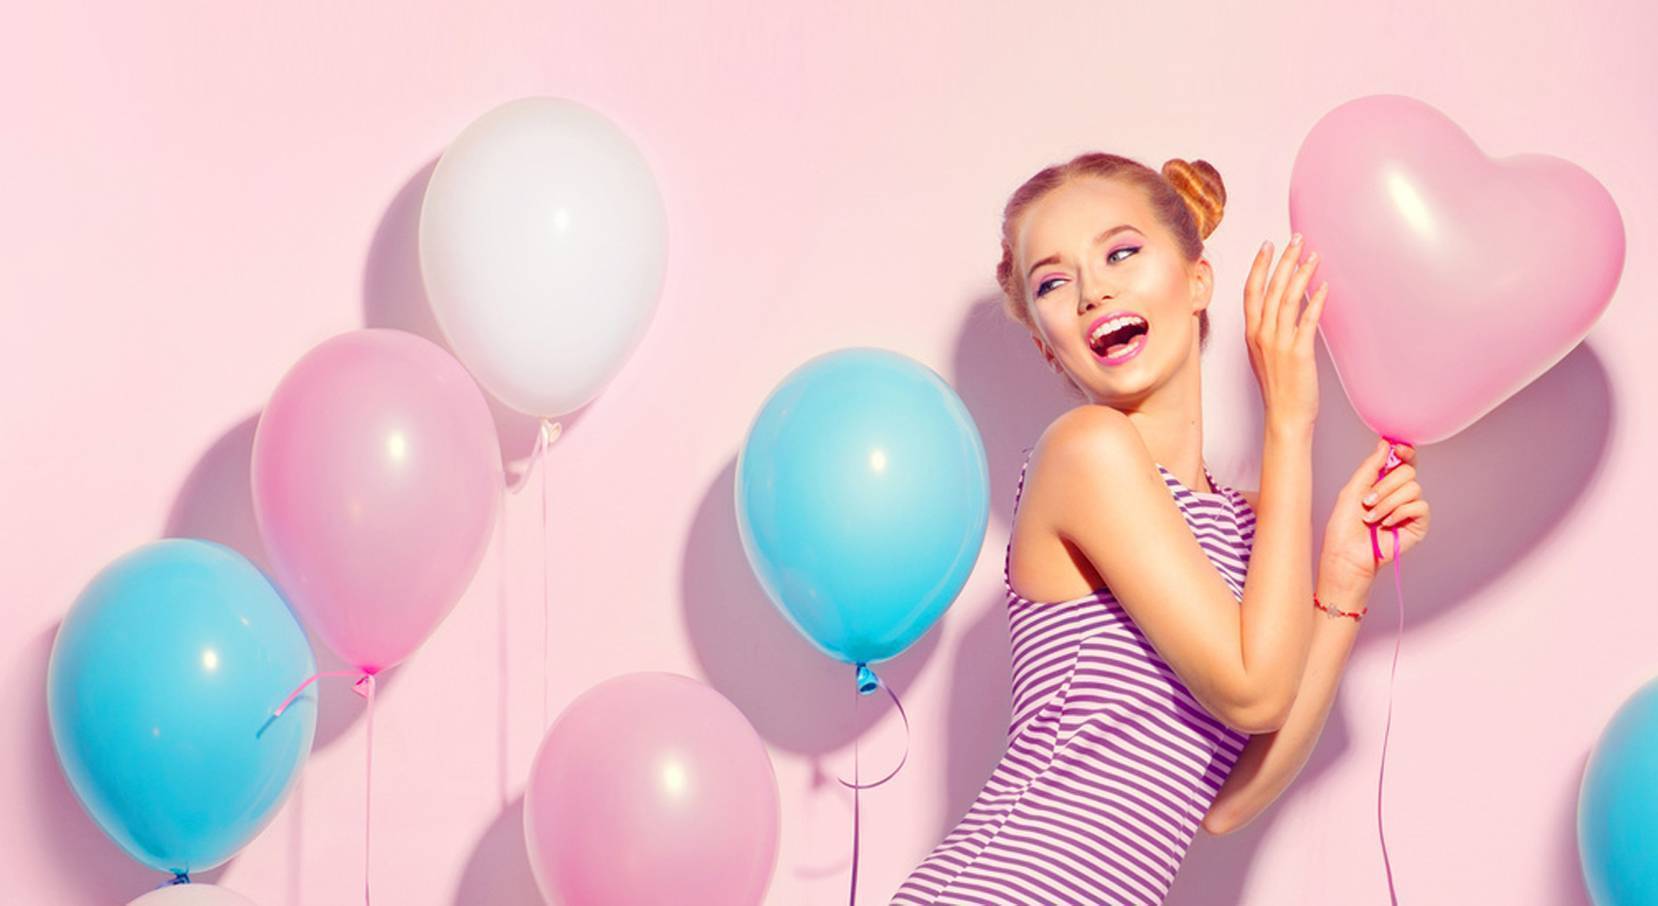 Balloon Inflator - Lagenda - modelleerballonnen - Ha Ha Entertainment